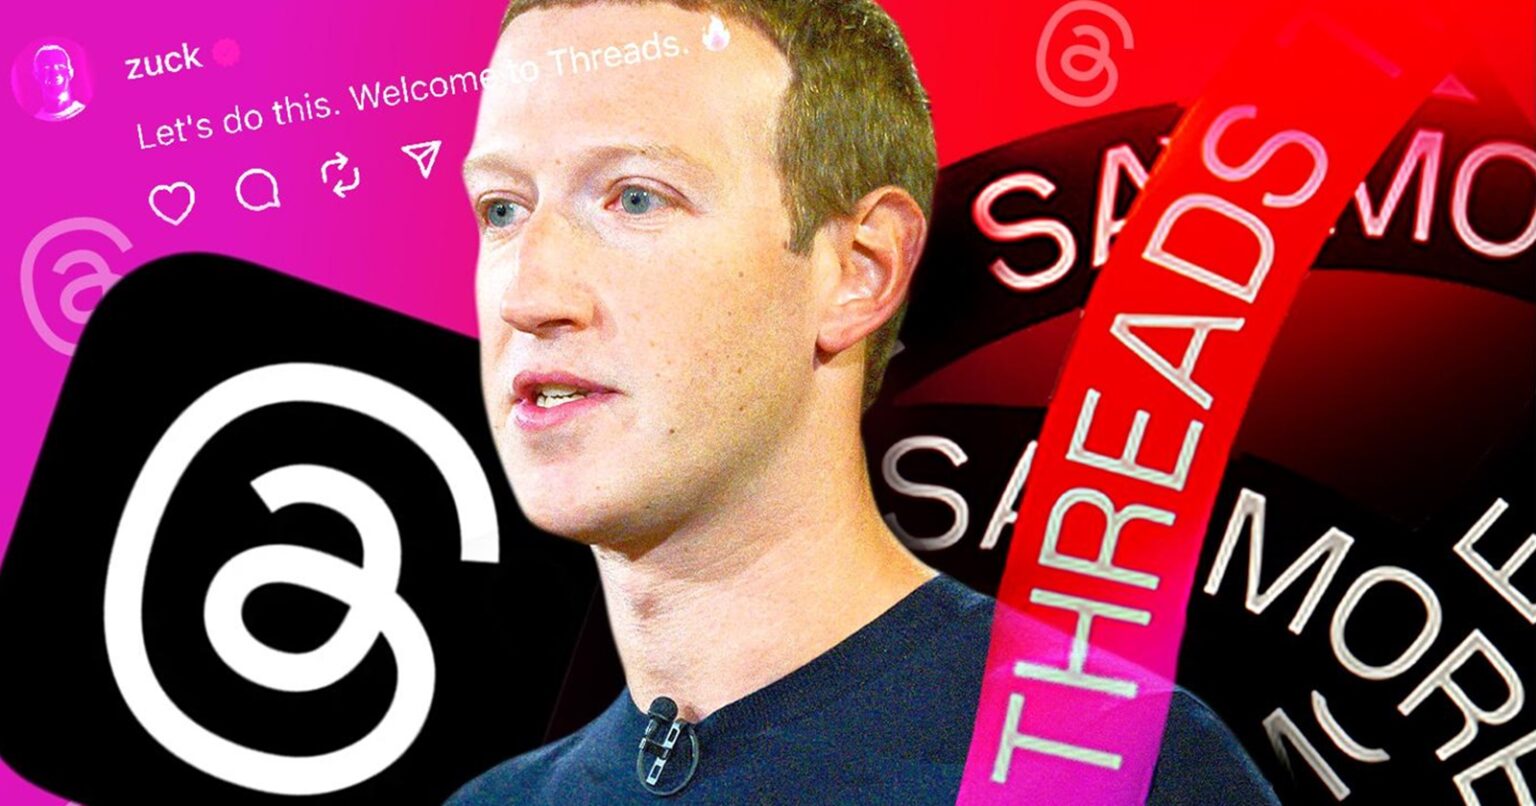 Threads: Zuckerberg vuole un miliardo di utenti entro pochi anni